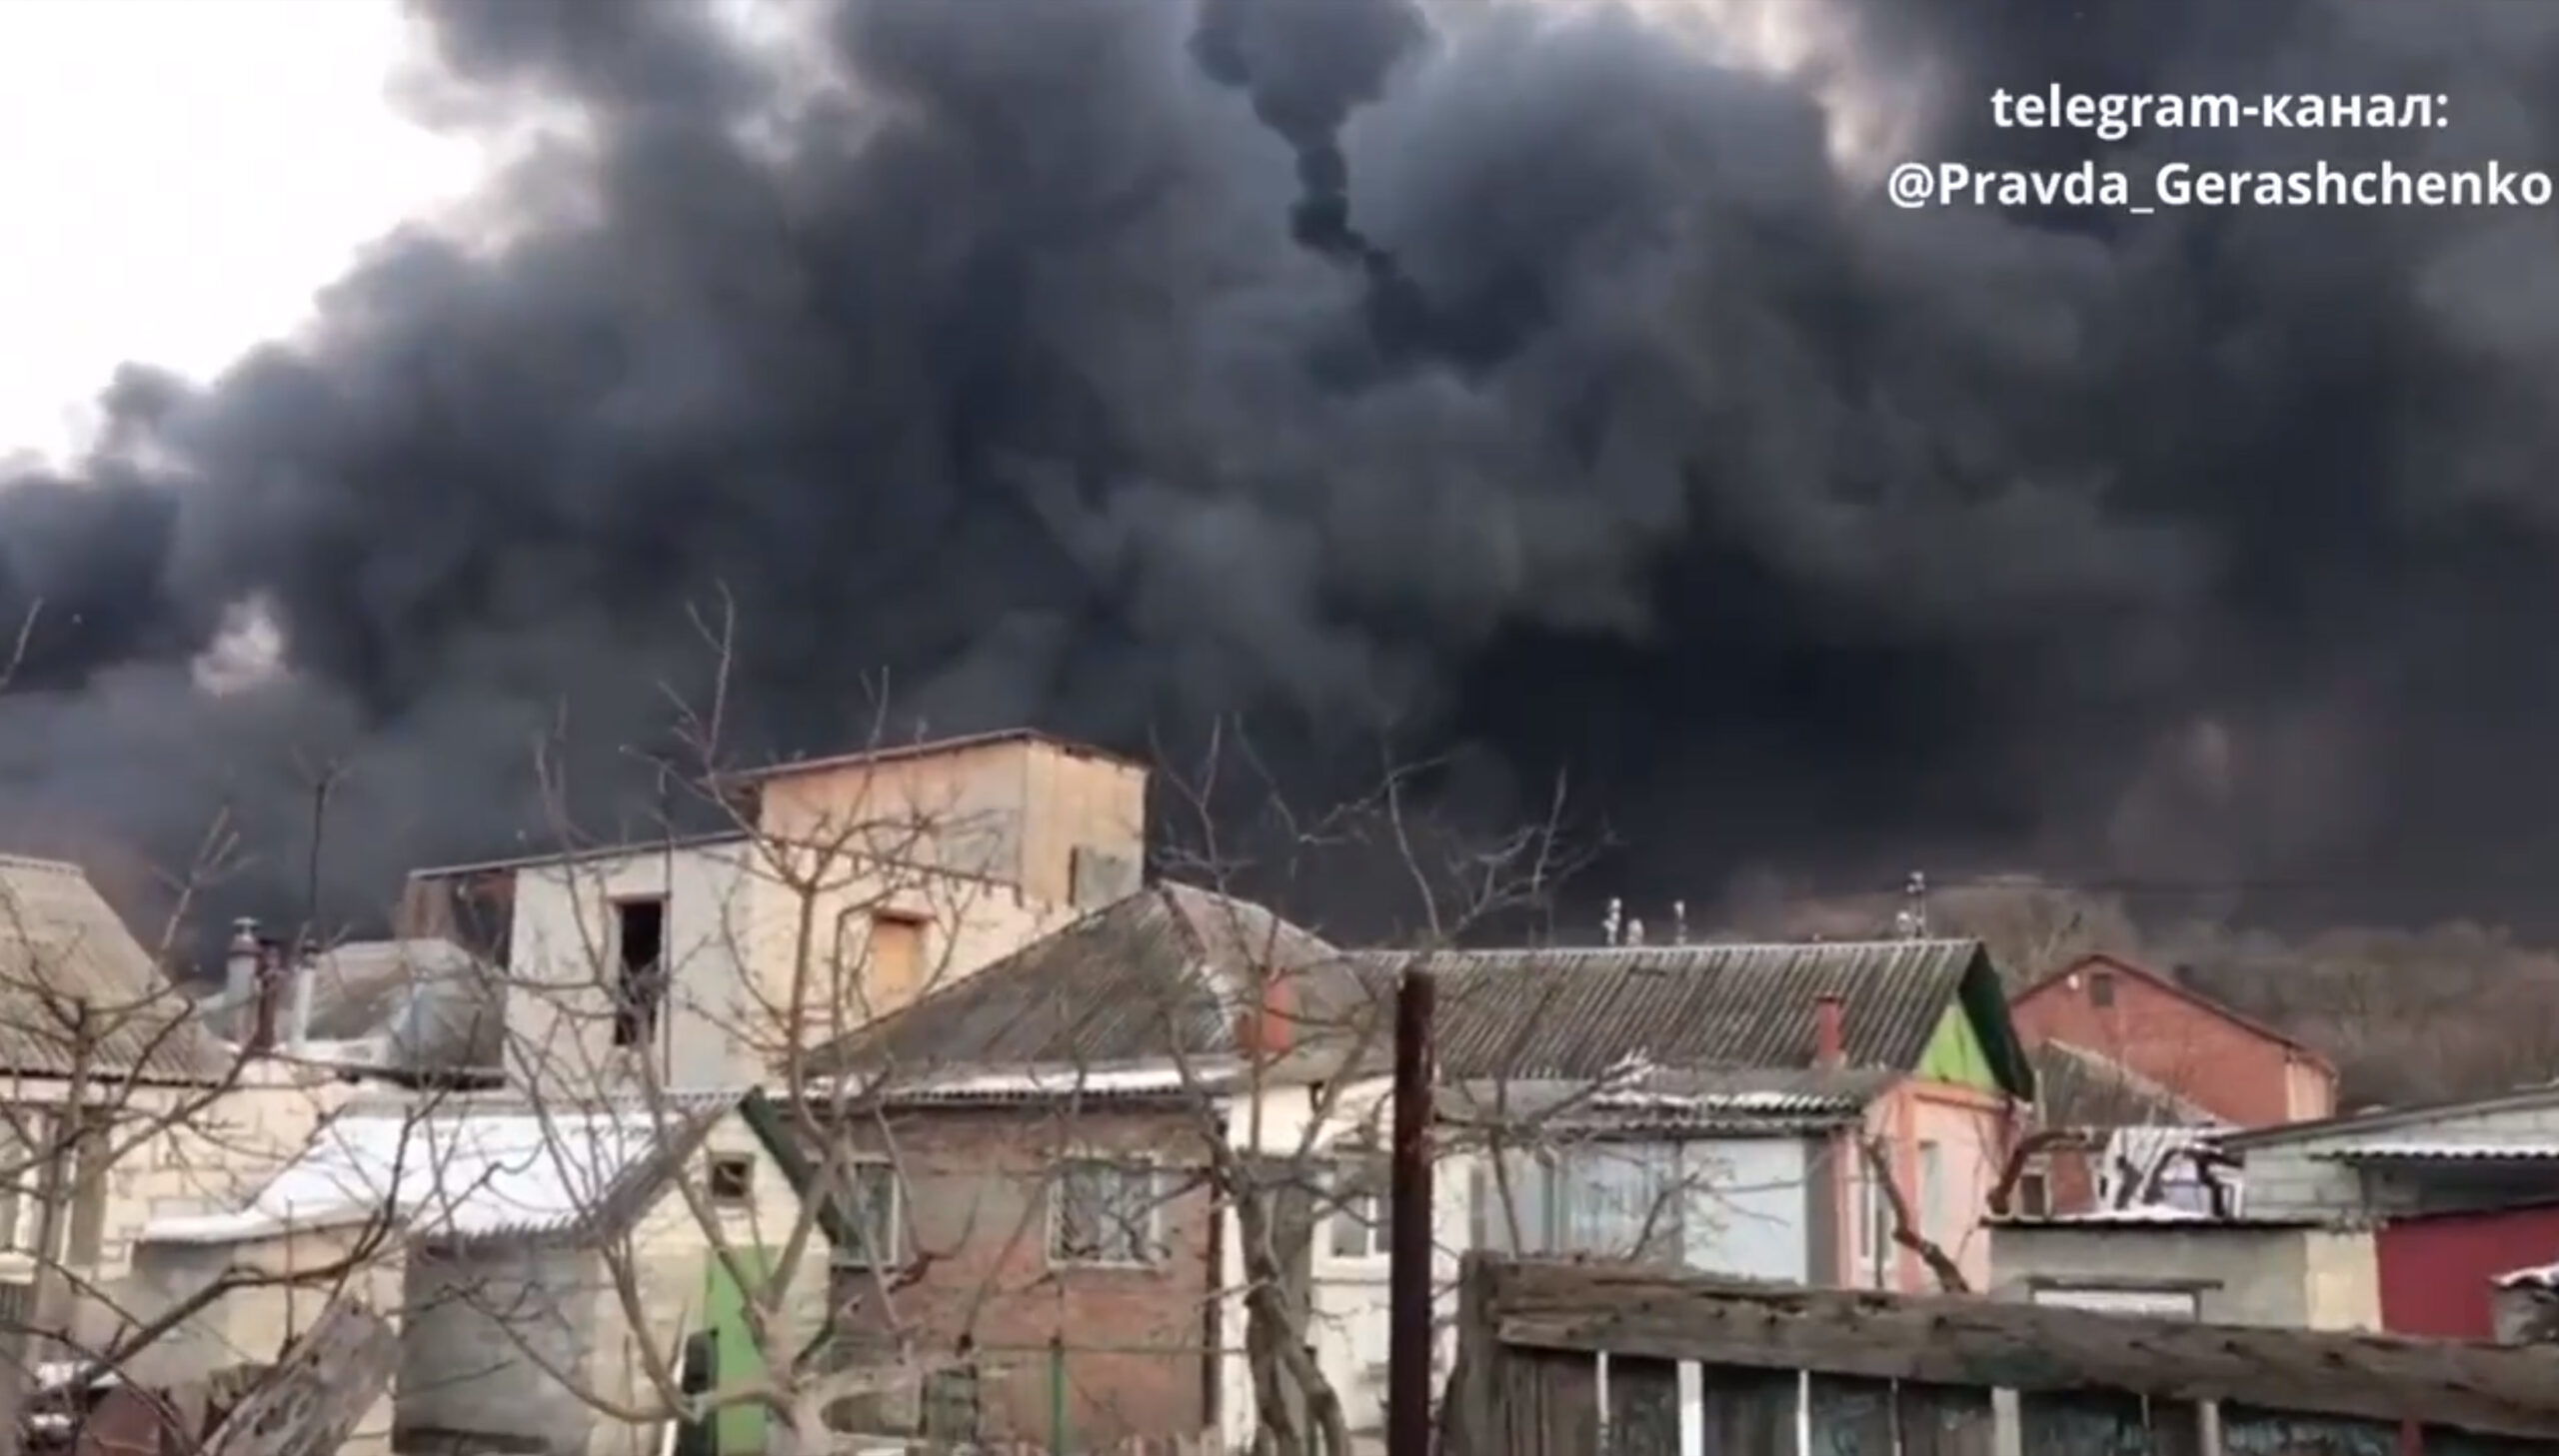 بمباران شهر خارکیف توسط نیروهای نظامی روسیه منجر به توده عظیمی از دود در بازار خارکیف شد